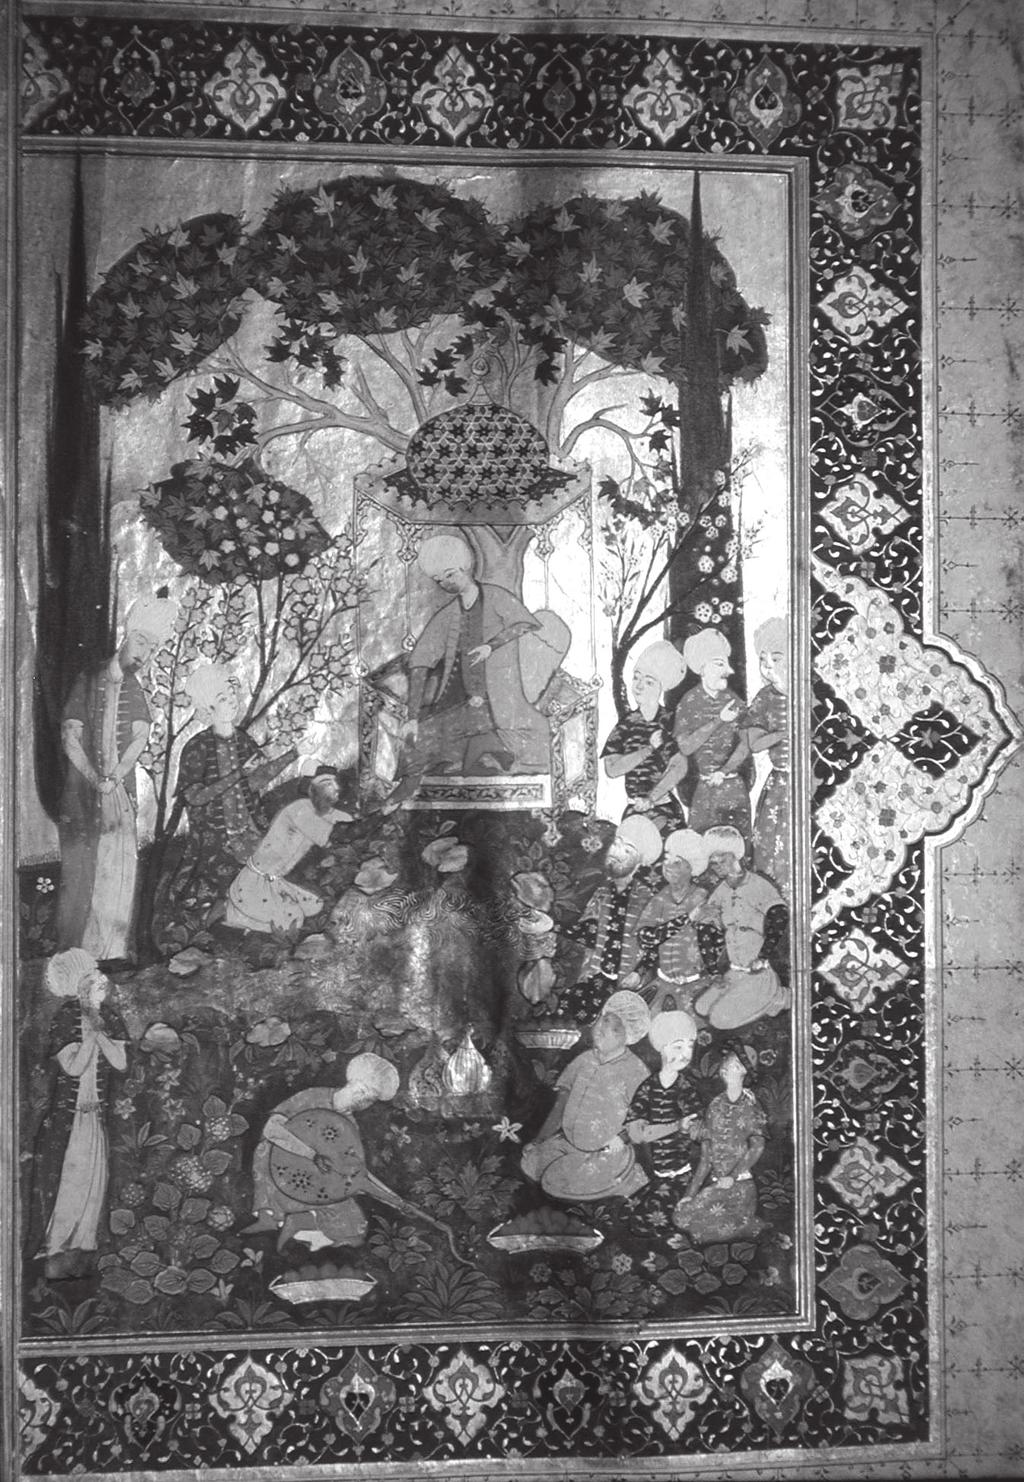 11 12 13 Sinan Paşa ibaresi Topkapı Sarayı Müzesi Kütüphanesi nde bulunan ve tamamlanmasından sonra bir alıcıya daha çekici görünmesi için zenginleştirilmiş ikinci bir Hamse-i Nizamî nüshasının (H.